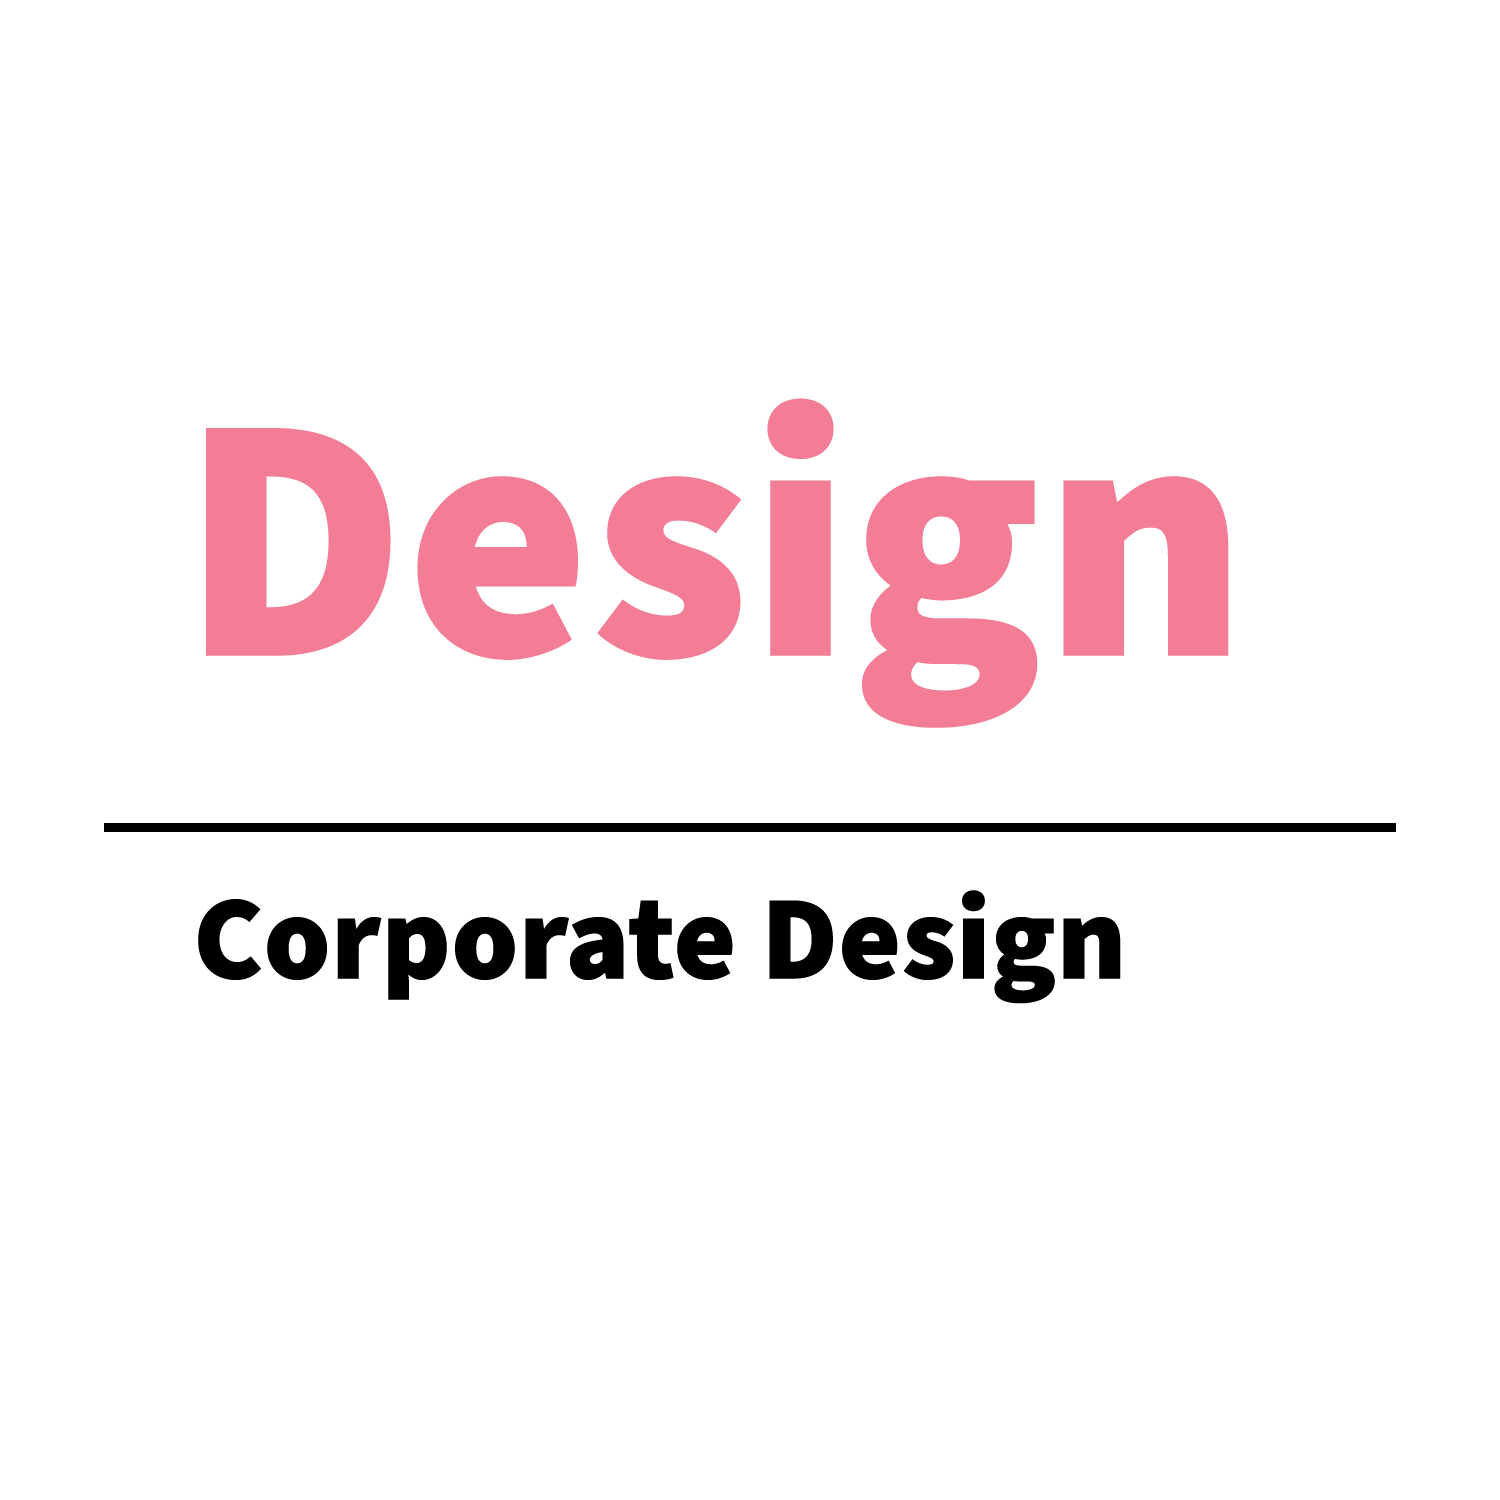 Kay Eickhoff Blogbeitrag: Corporate Design – Visuelle Identität für Unternehmen und Marken.